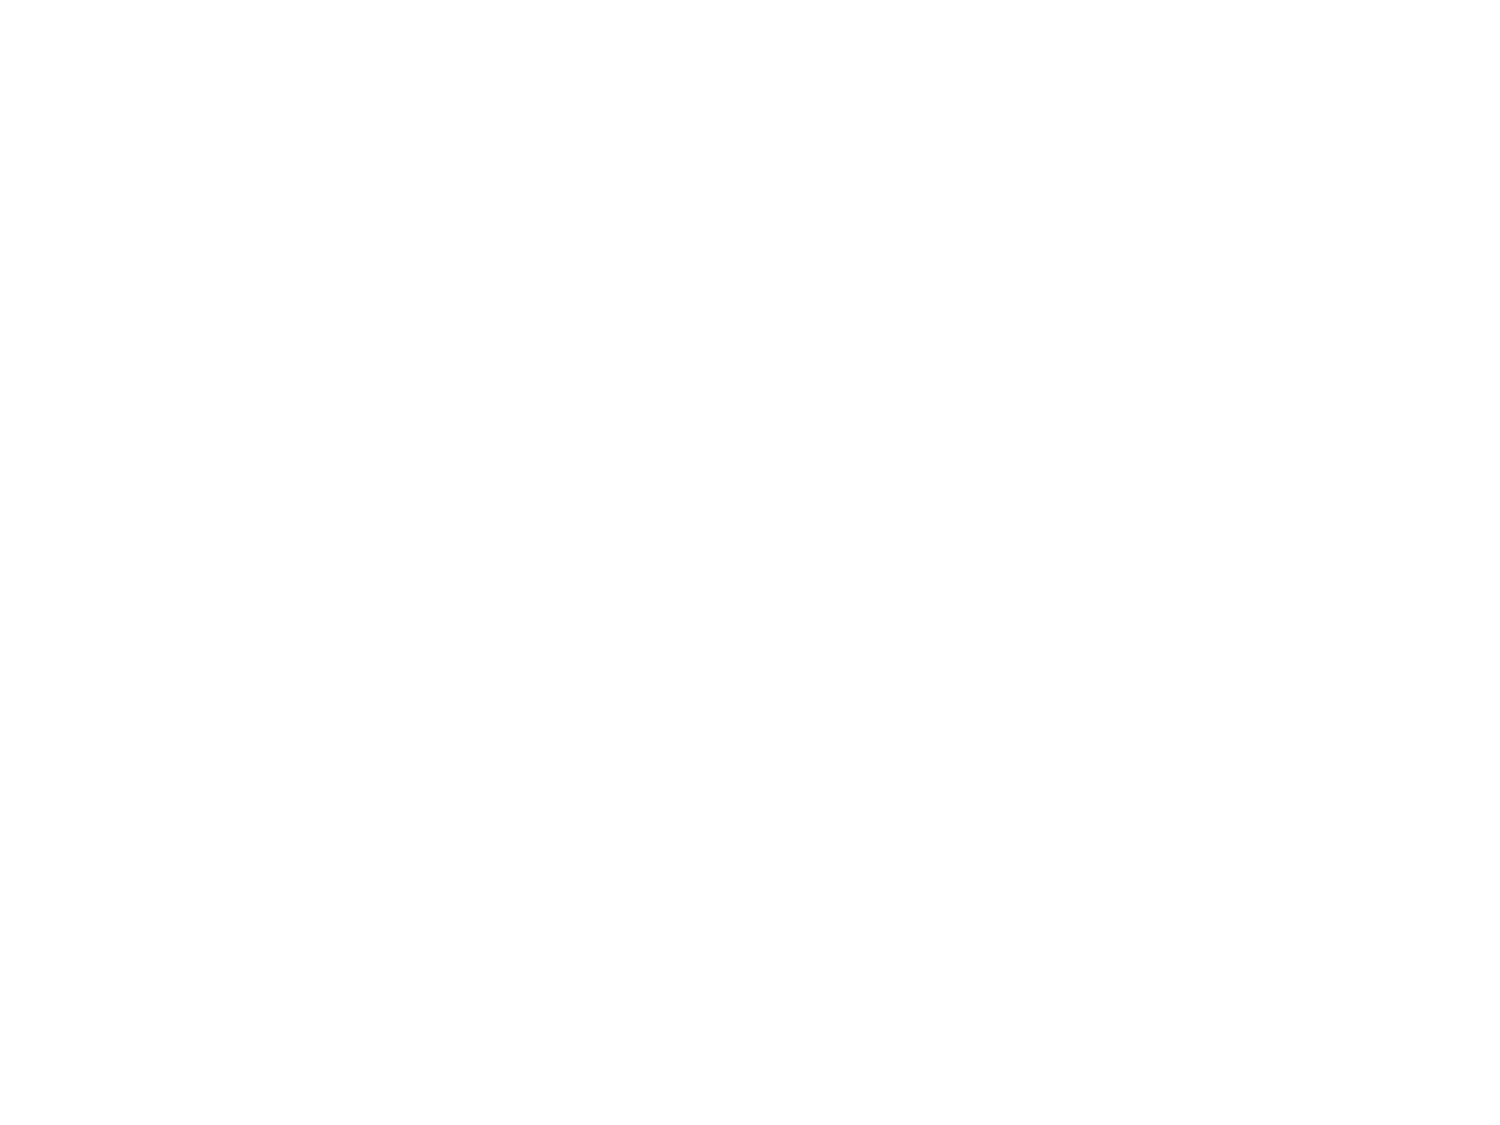 Nadia Sheikh Official Website